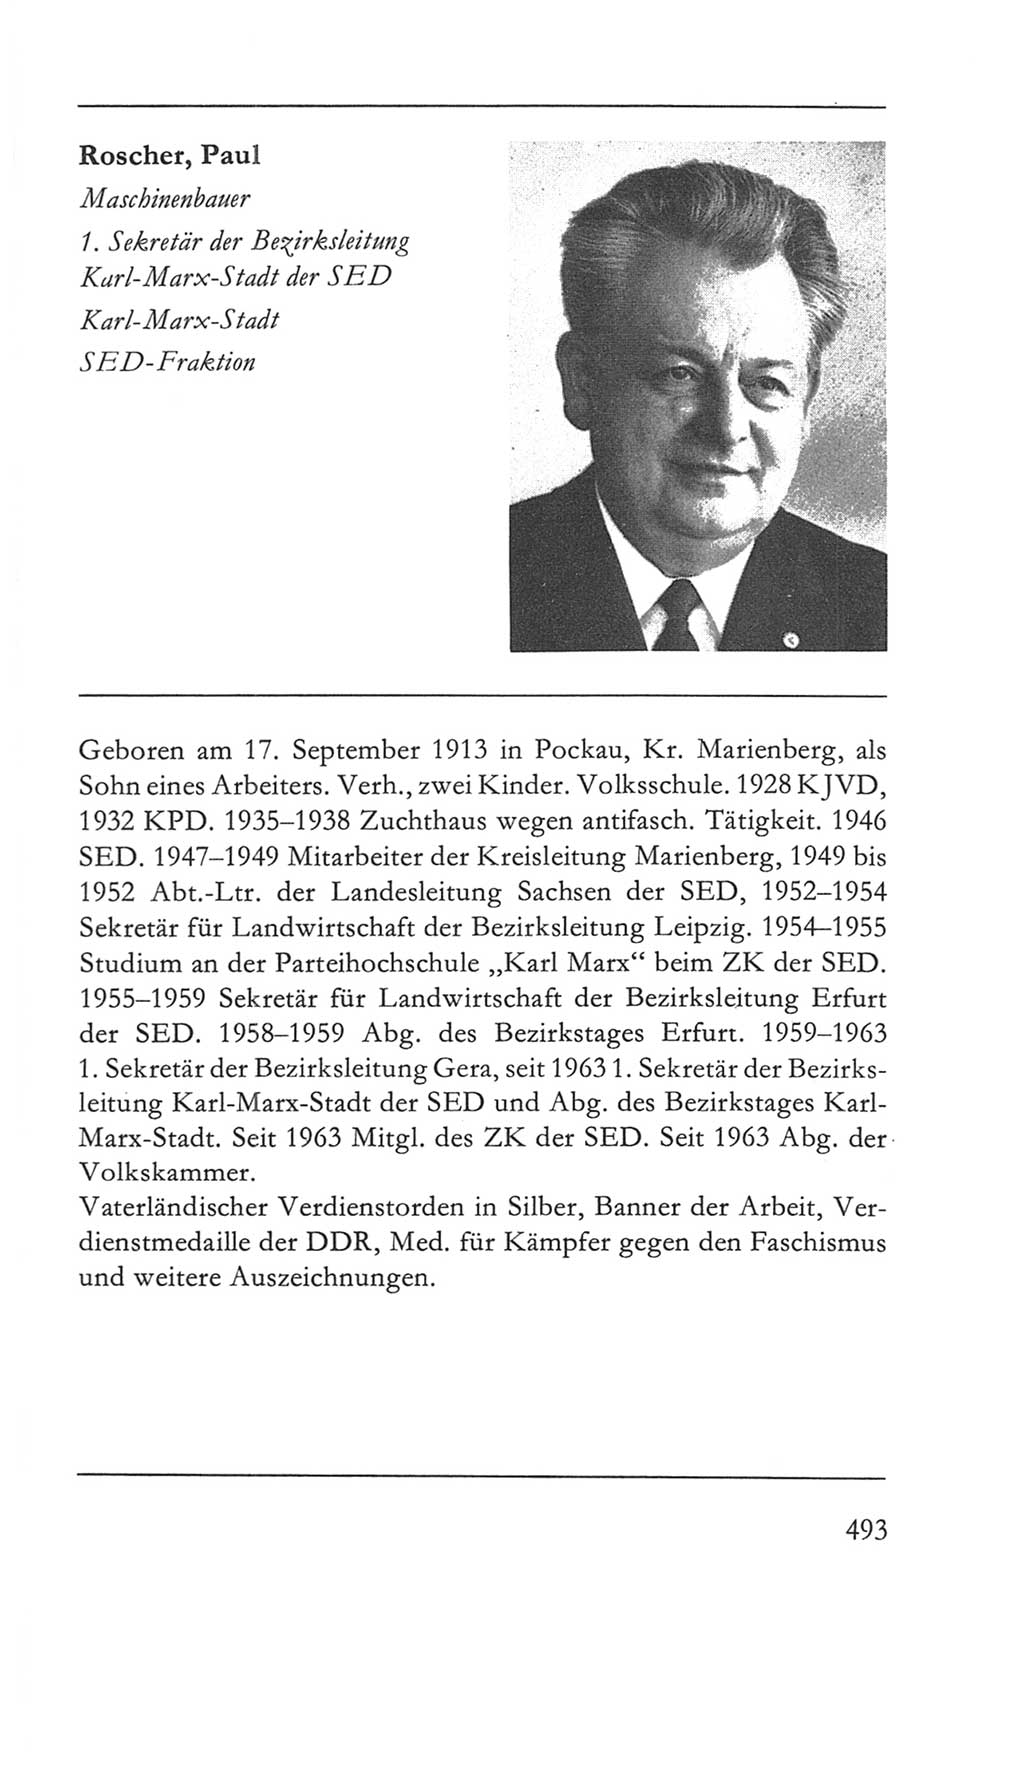 Volkskammer (VK) der Deutschen Demokratischen Republik (DDR) 5. Wahlperiode 1967-1971, Seite 493 (VK. DDR 5. WP. 1967-1971, S. 493)